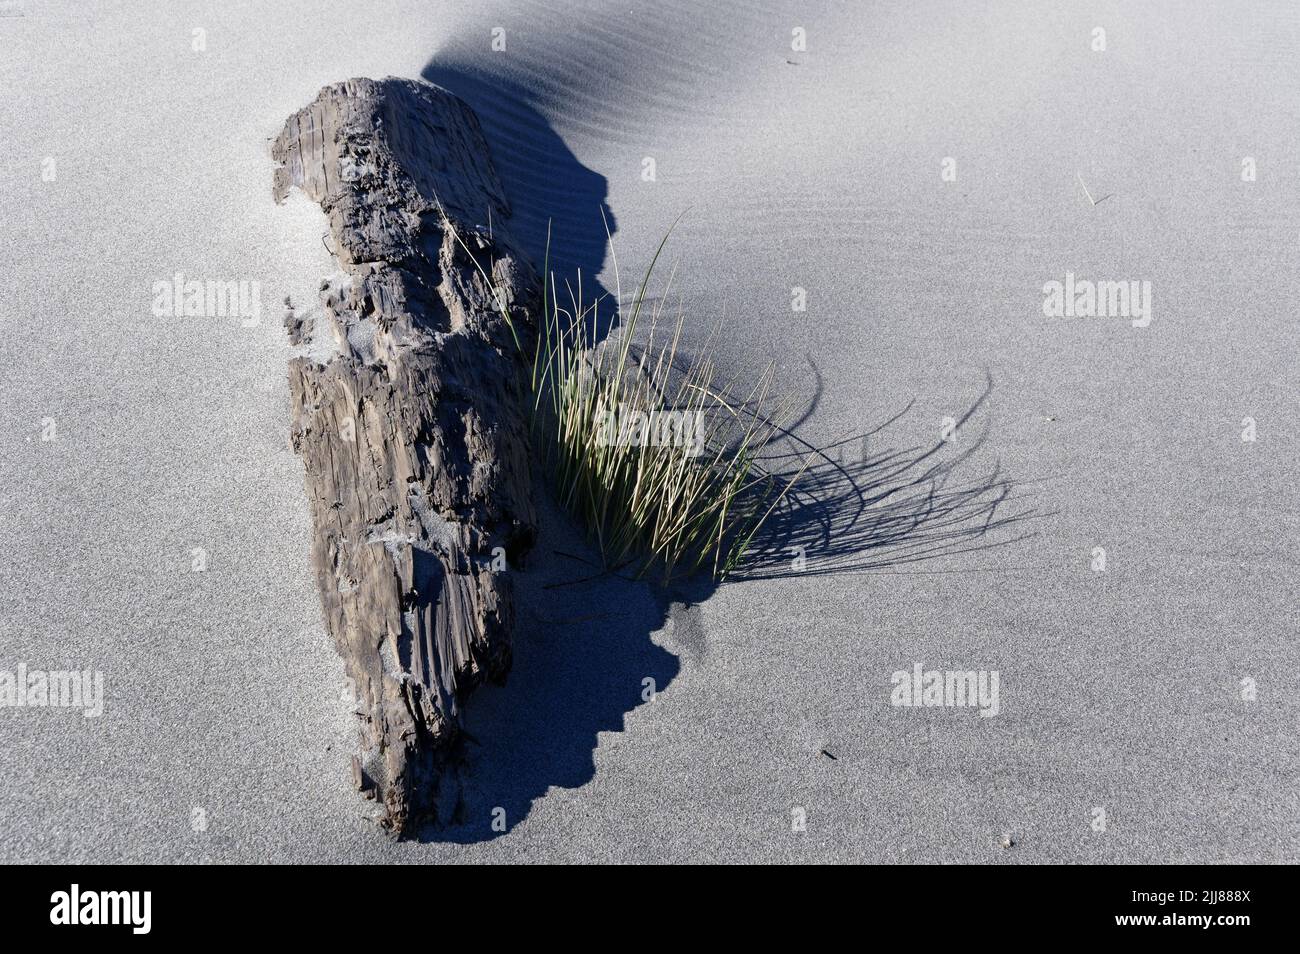 La sotana crece a lo largo de un tronco de árbol erosionado parcialmente enterrado por la arena soplada por el viento en una playa. Foto de stock